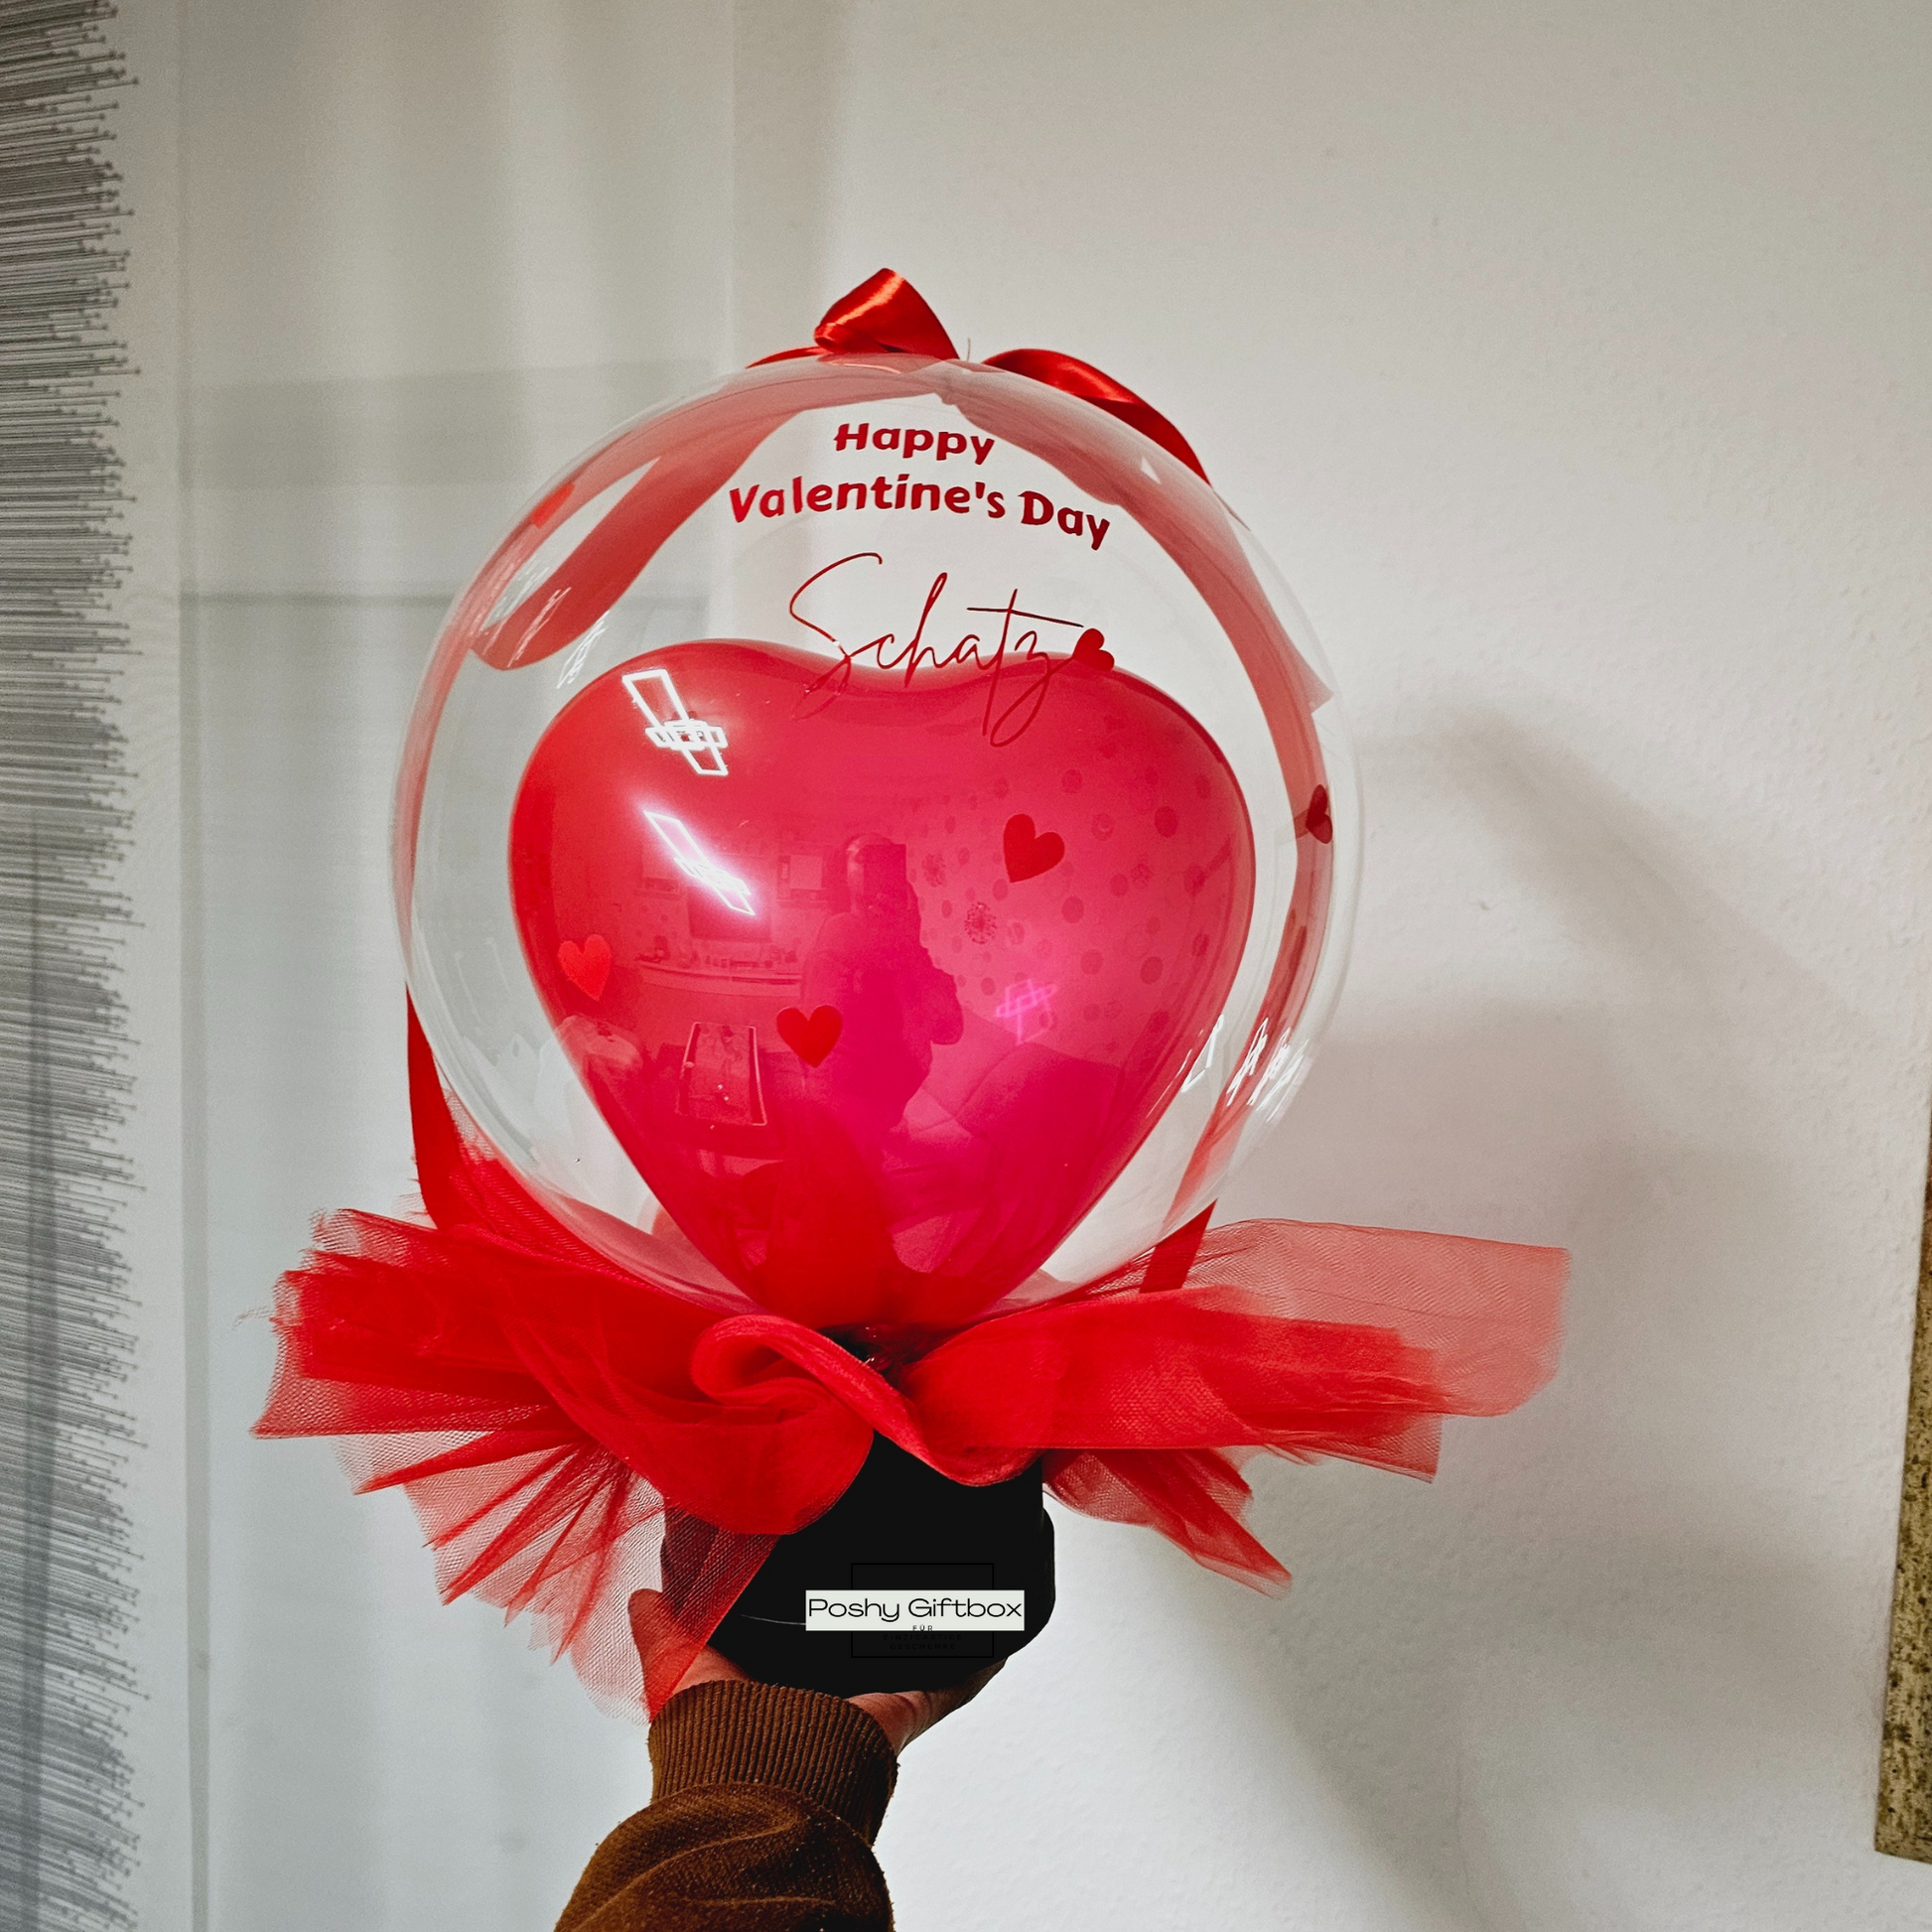 Ballon Geschenk "VALENTINSTAG"/Geburtstagsgeschenk/Hochzeitsgeschenk /Verlobungsgeschenk/Luftballon ROT/Valentinstag Geschenk/Herz Ballon mit Wunschtext PoshyGiftbox